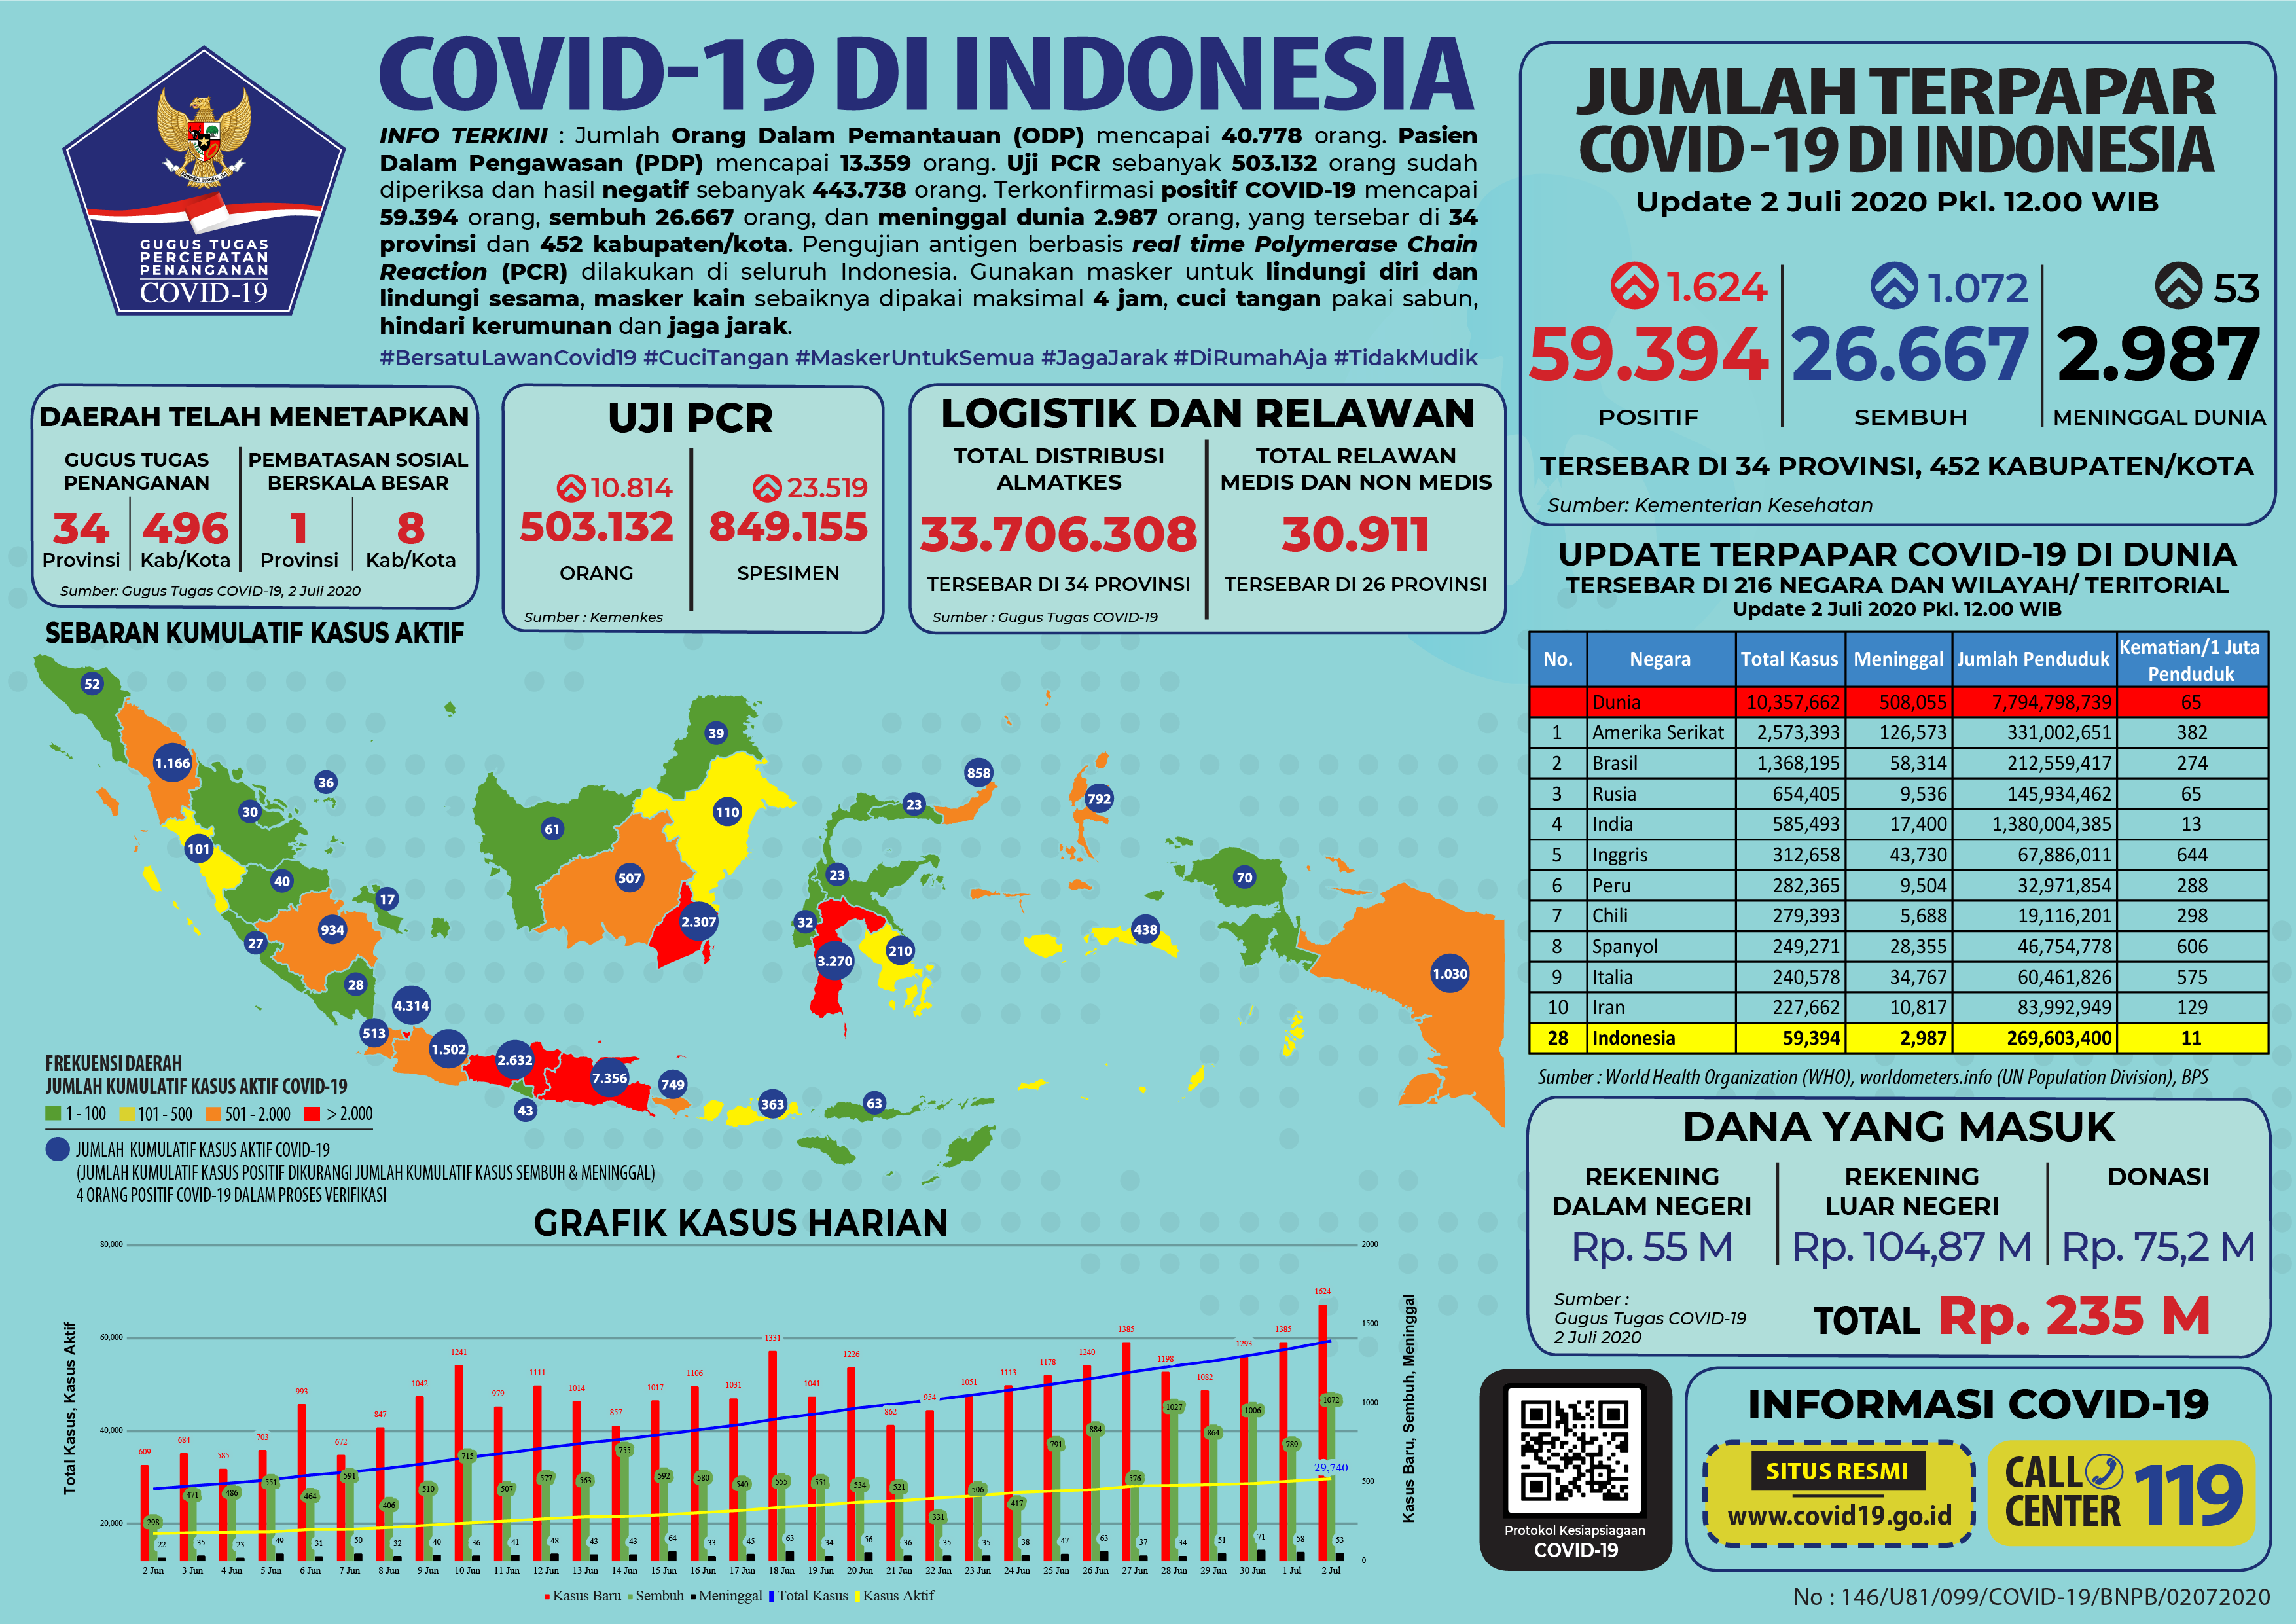 Update Covid-19 di Indonesia hingga Kamis 2 Juli 2020.*